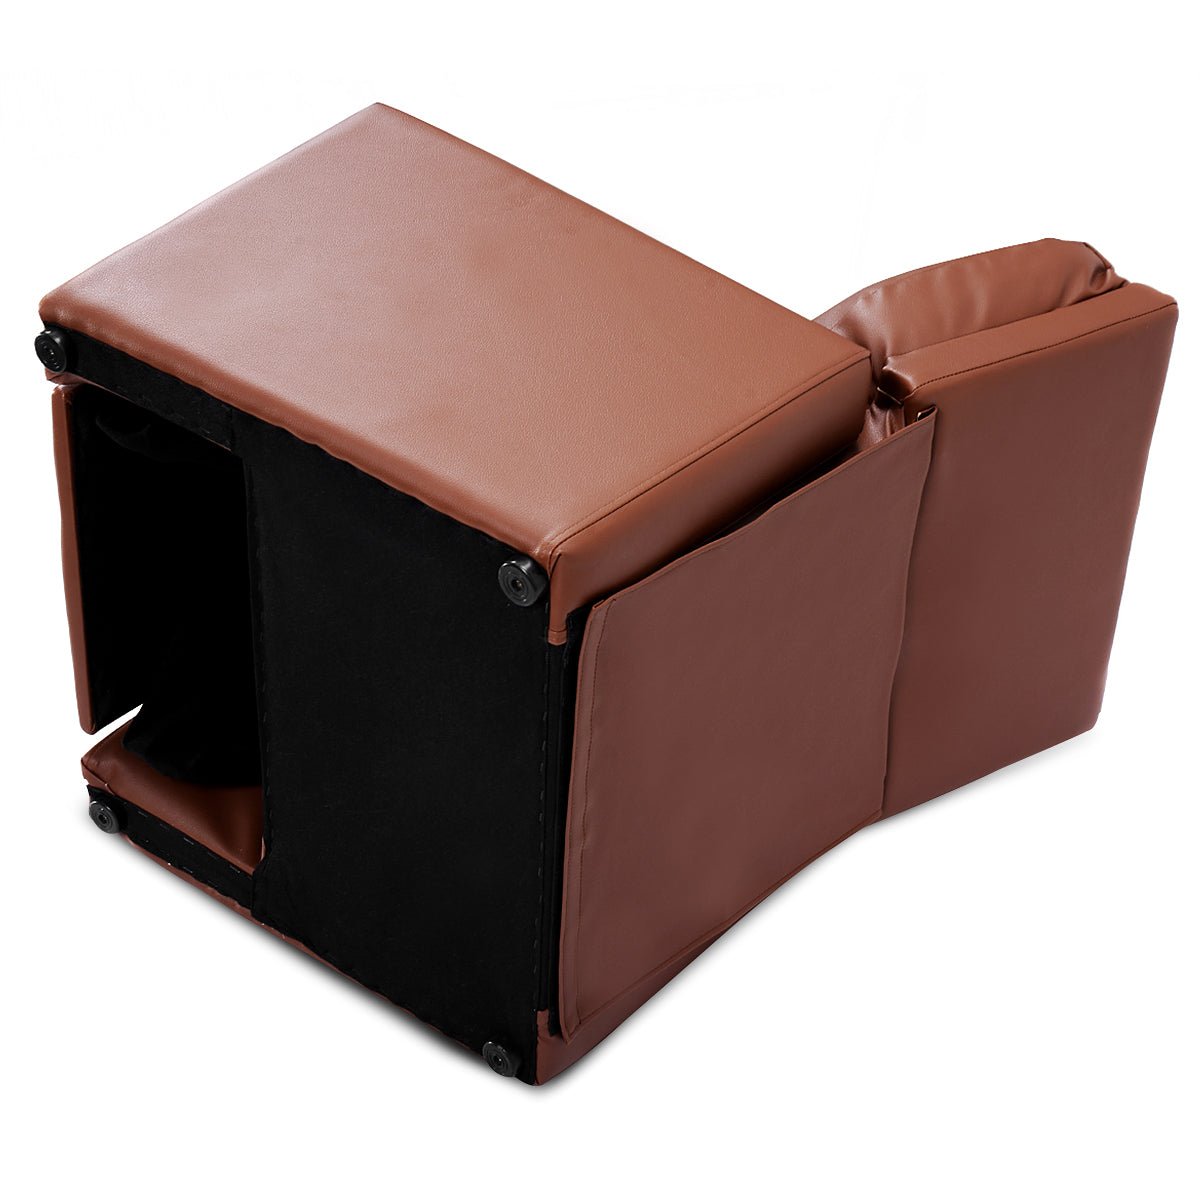 Children's Adjustable Lounge Seat: High Backrest and Armrest - Cozy Brown